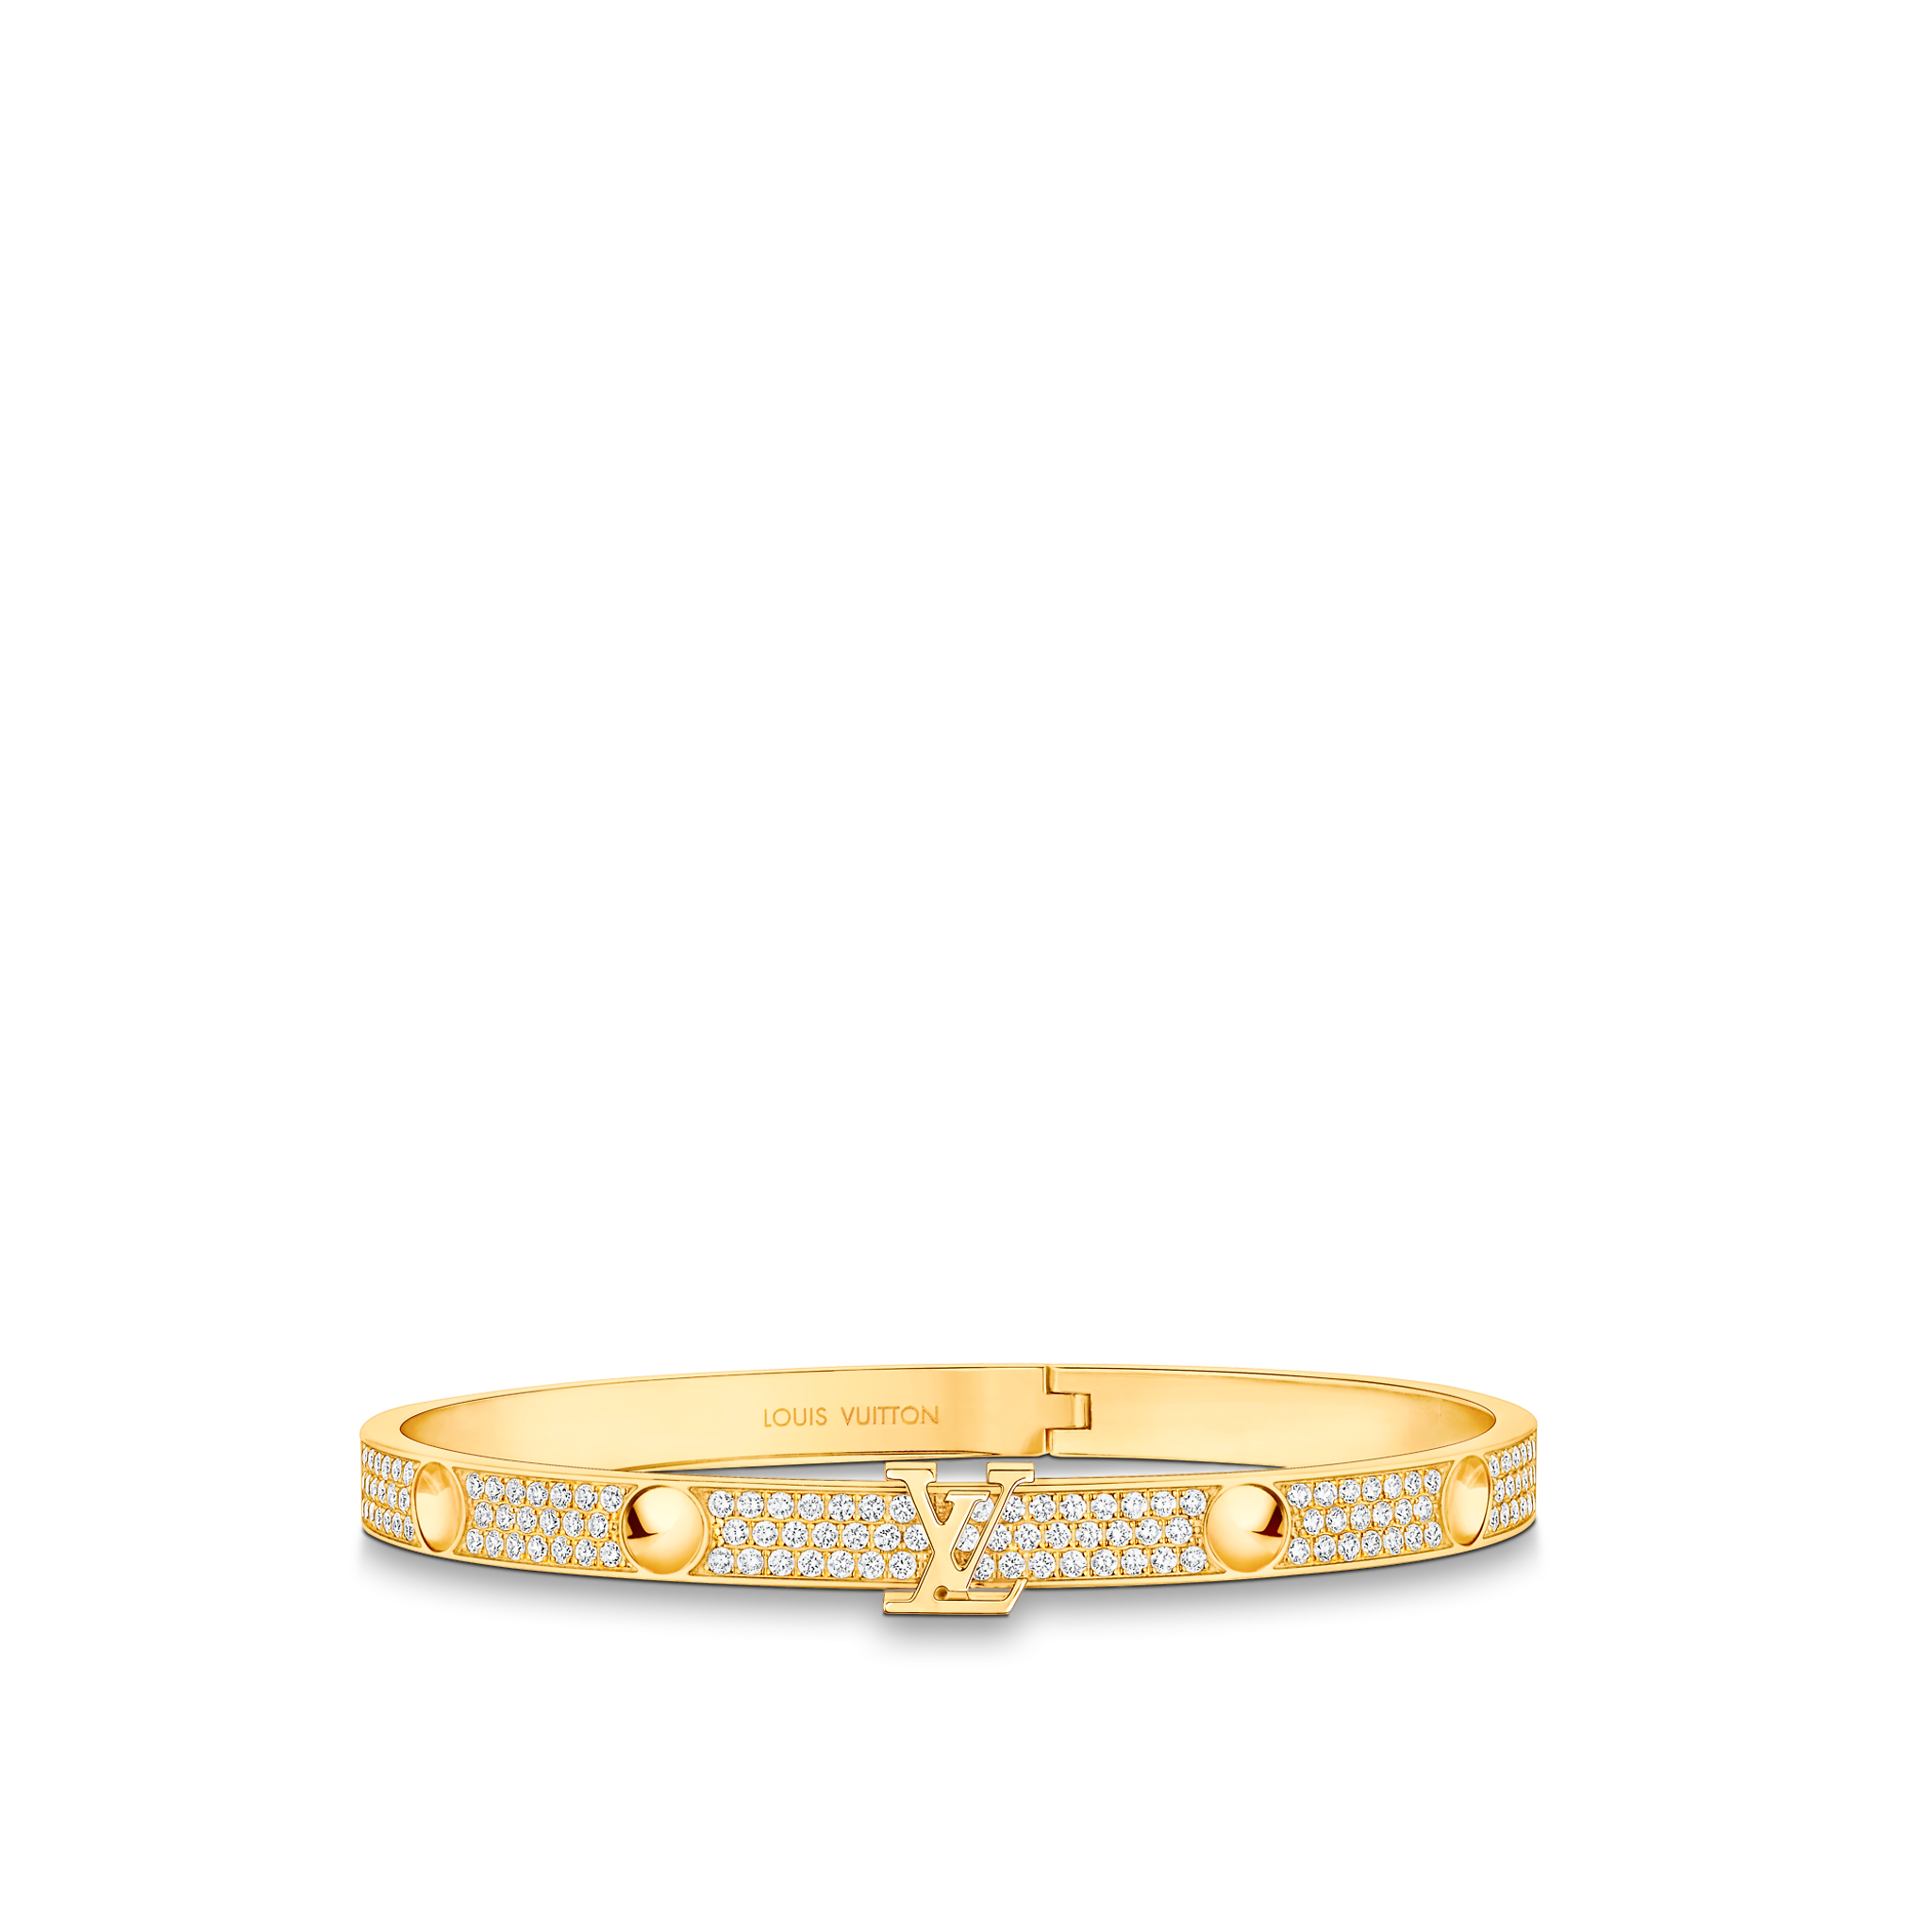 Louis Vuitton LV Volt Upside Down Bracelet, Yellow Gold Gold. Size M